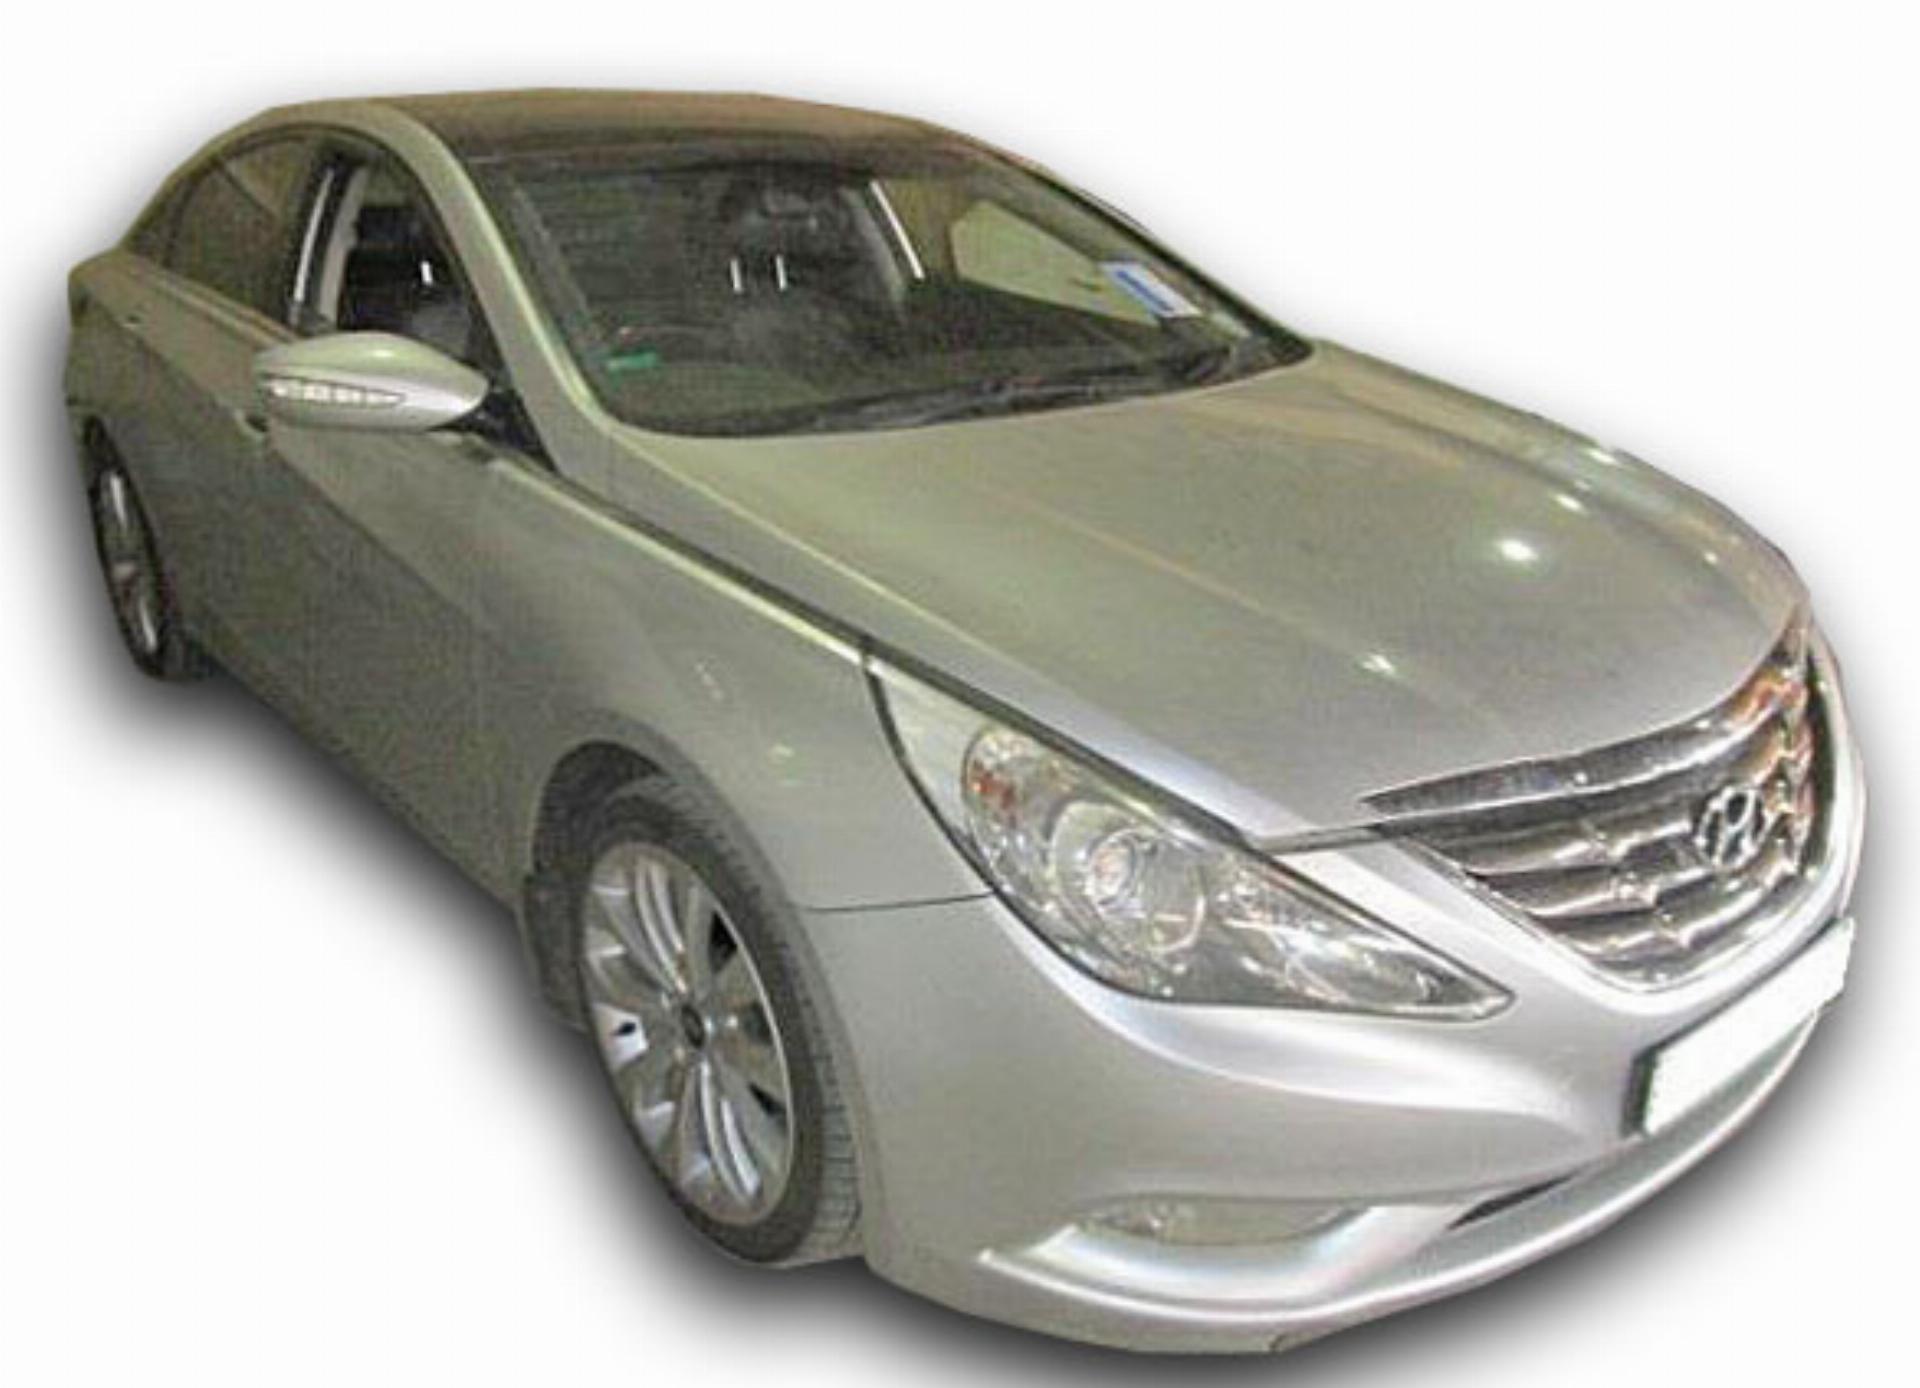 Repossessed Hyundai Sonata 2.4 GLS Execu 2011 on auction ...